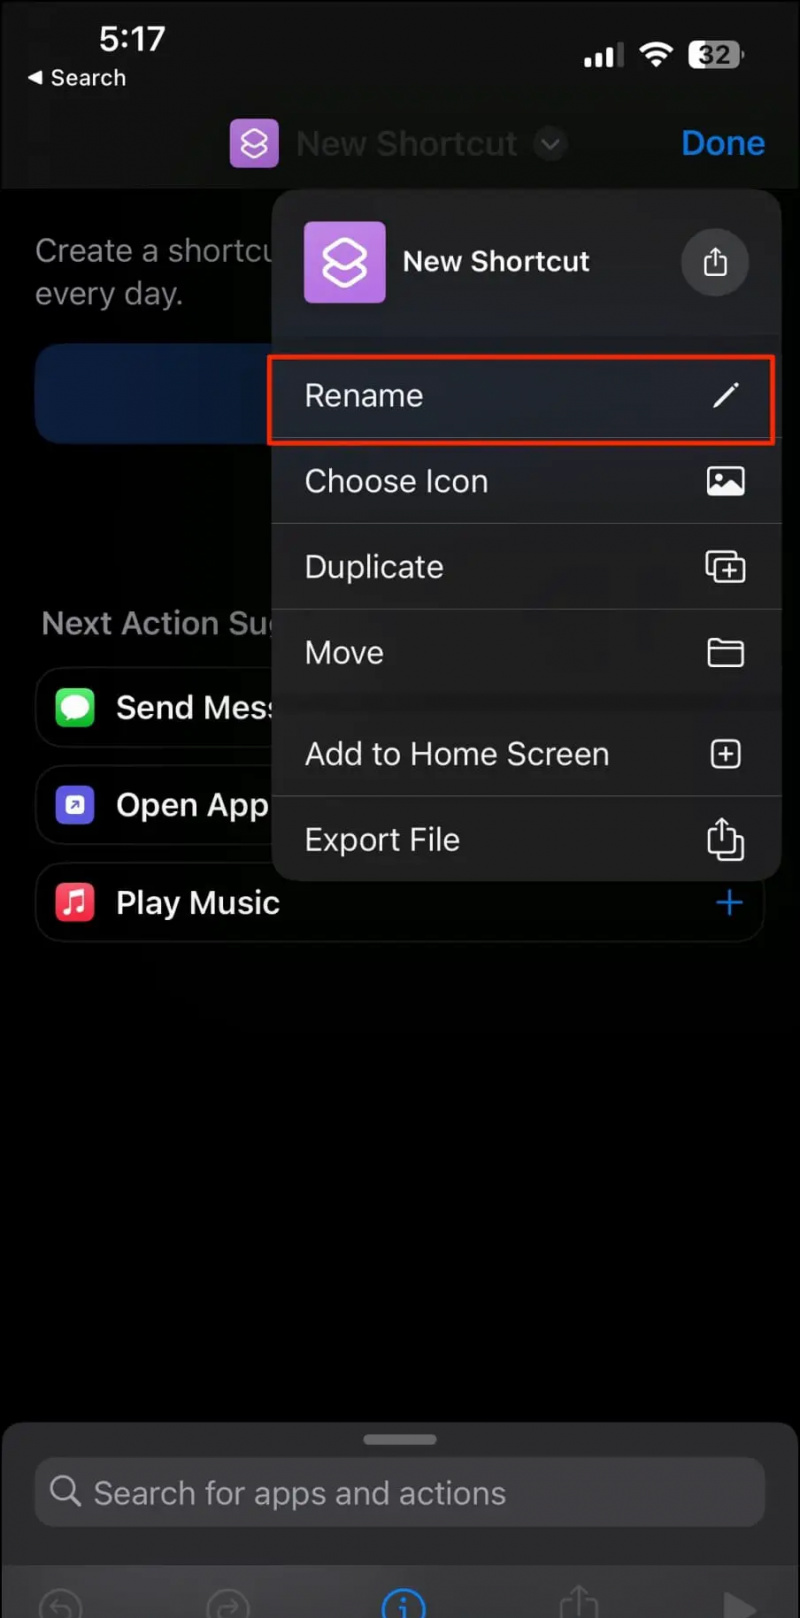   Vytvorte skratku aplikácie chránenej heslom v systéme iOS